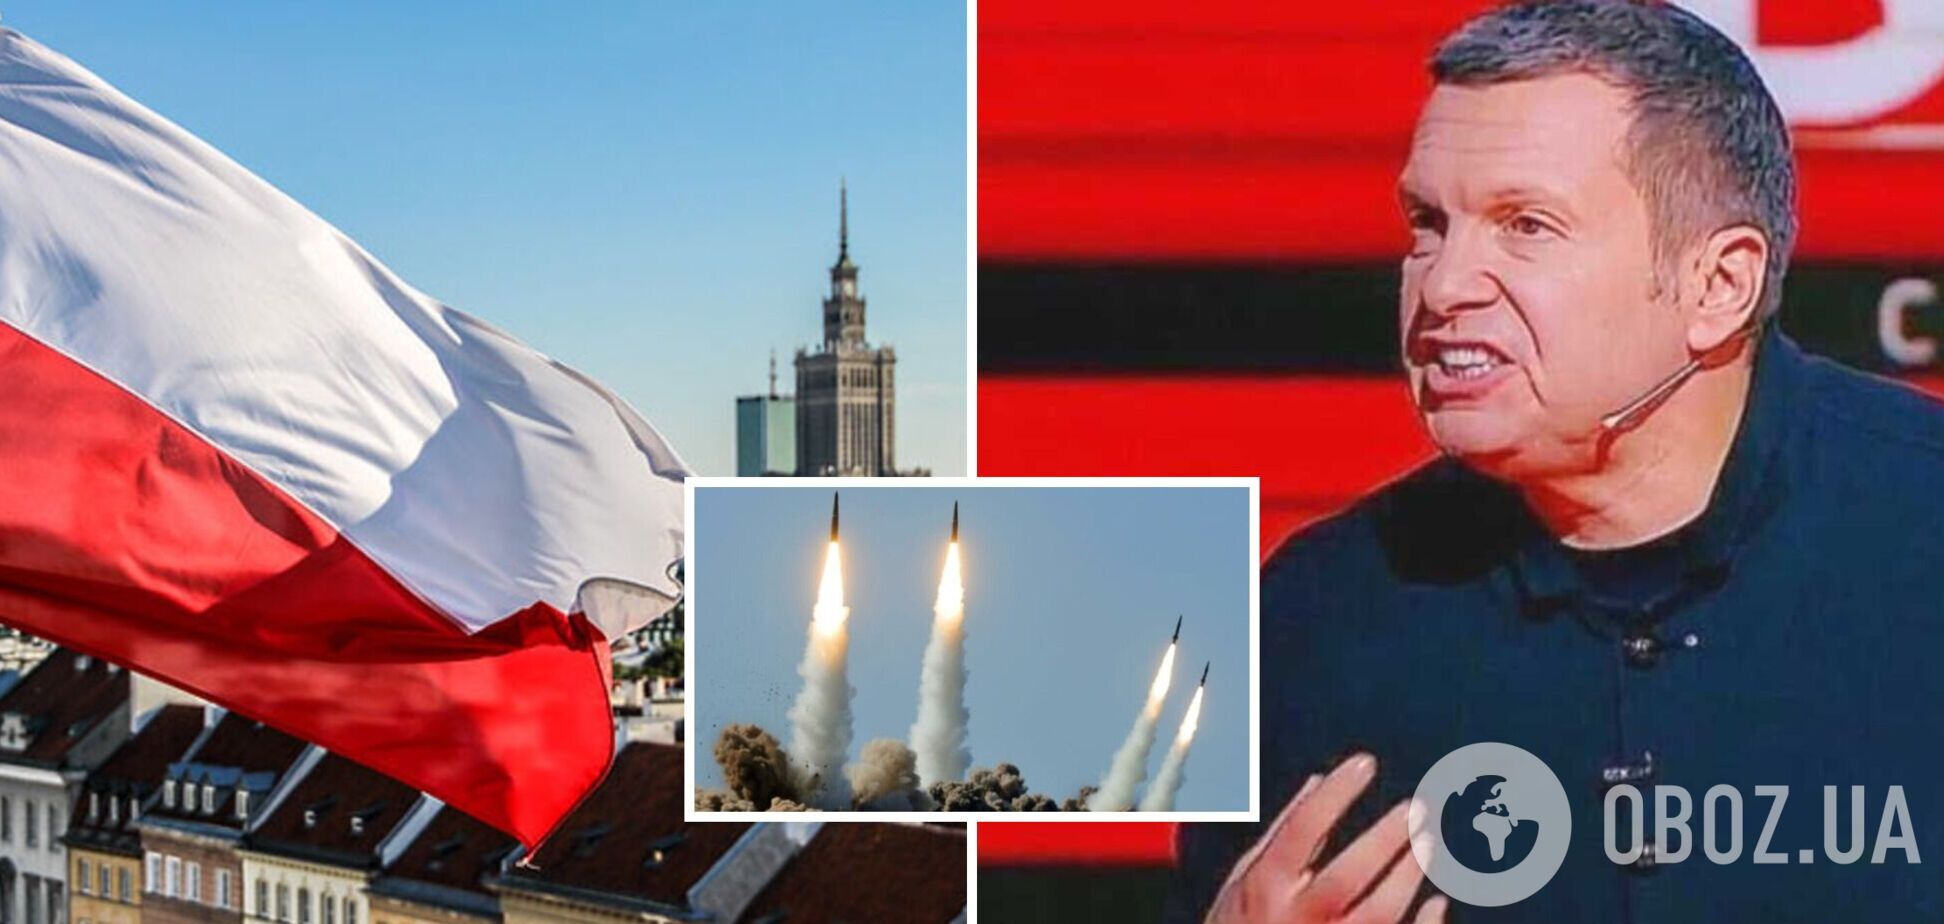 'Навіть думати зайвий раз не будемо': пропагандист Соловйов пригрозив знищити польські міста ракетами. Відео 